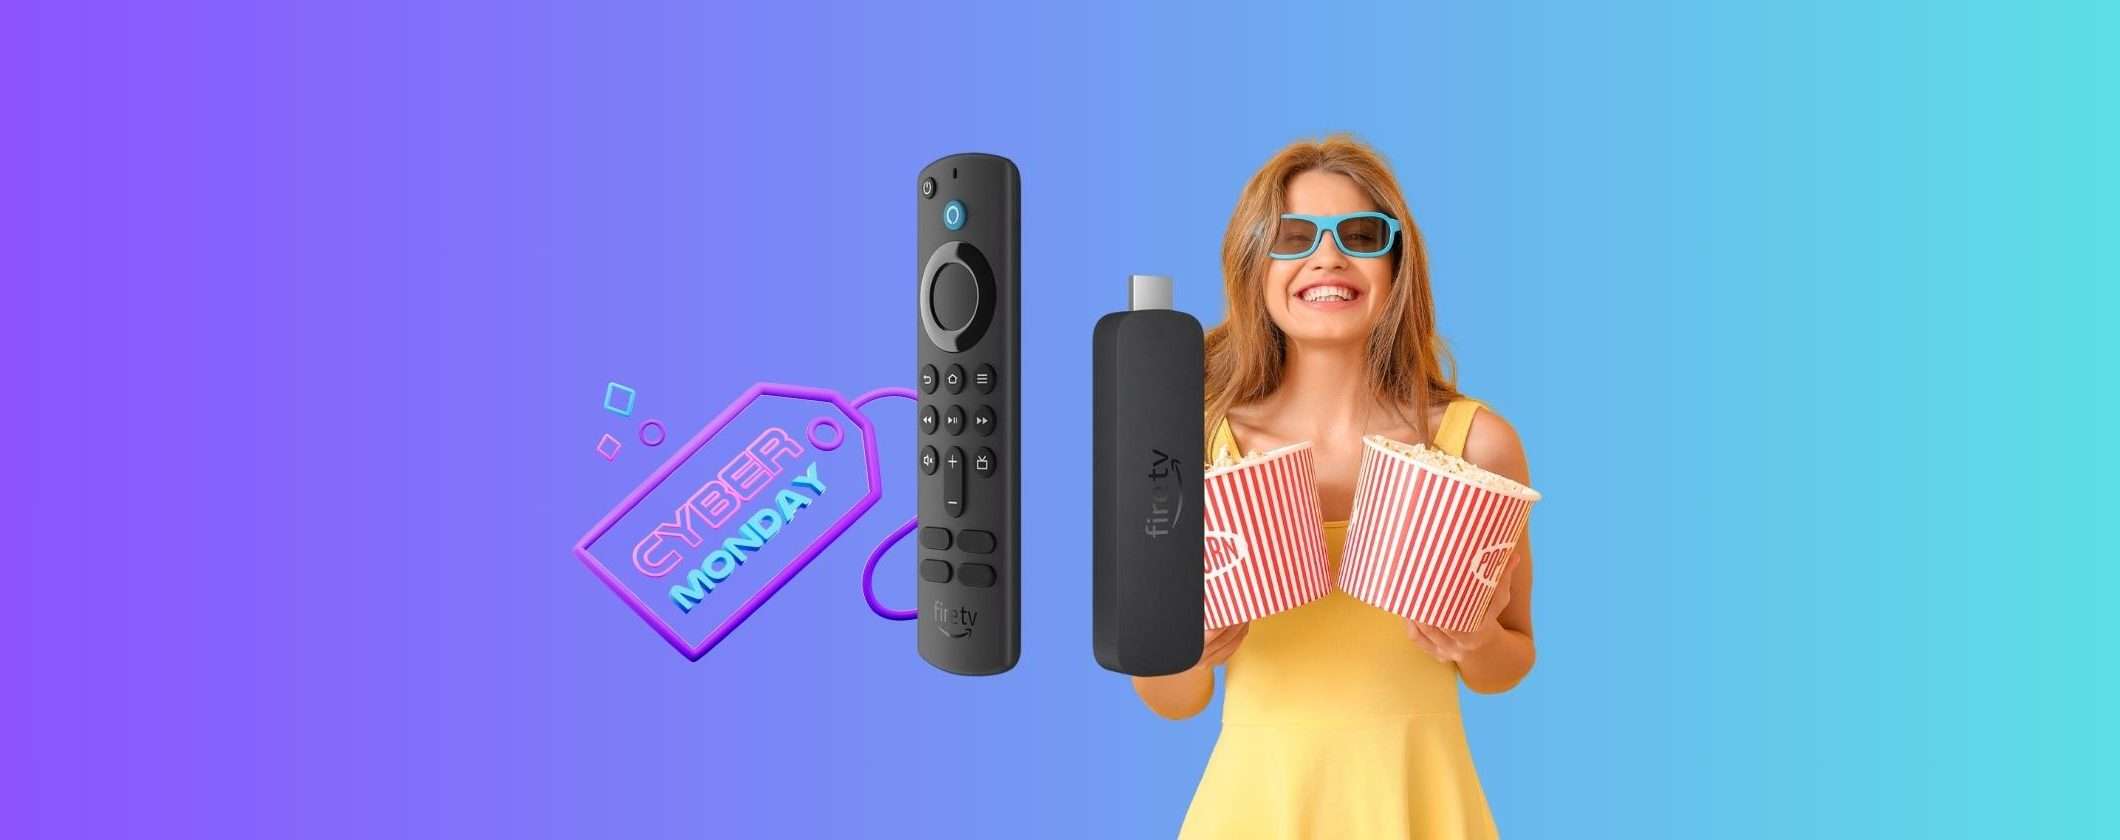 Fire TV Stick 4K a metà prezzo con il Cyber Monday di Amazon